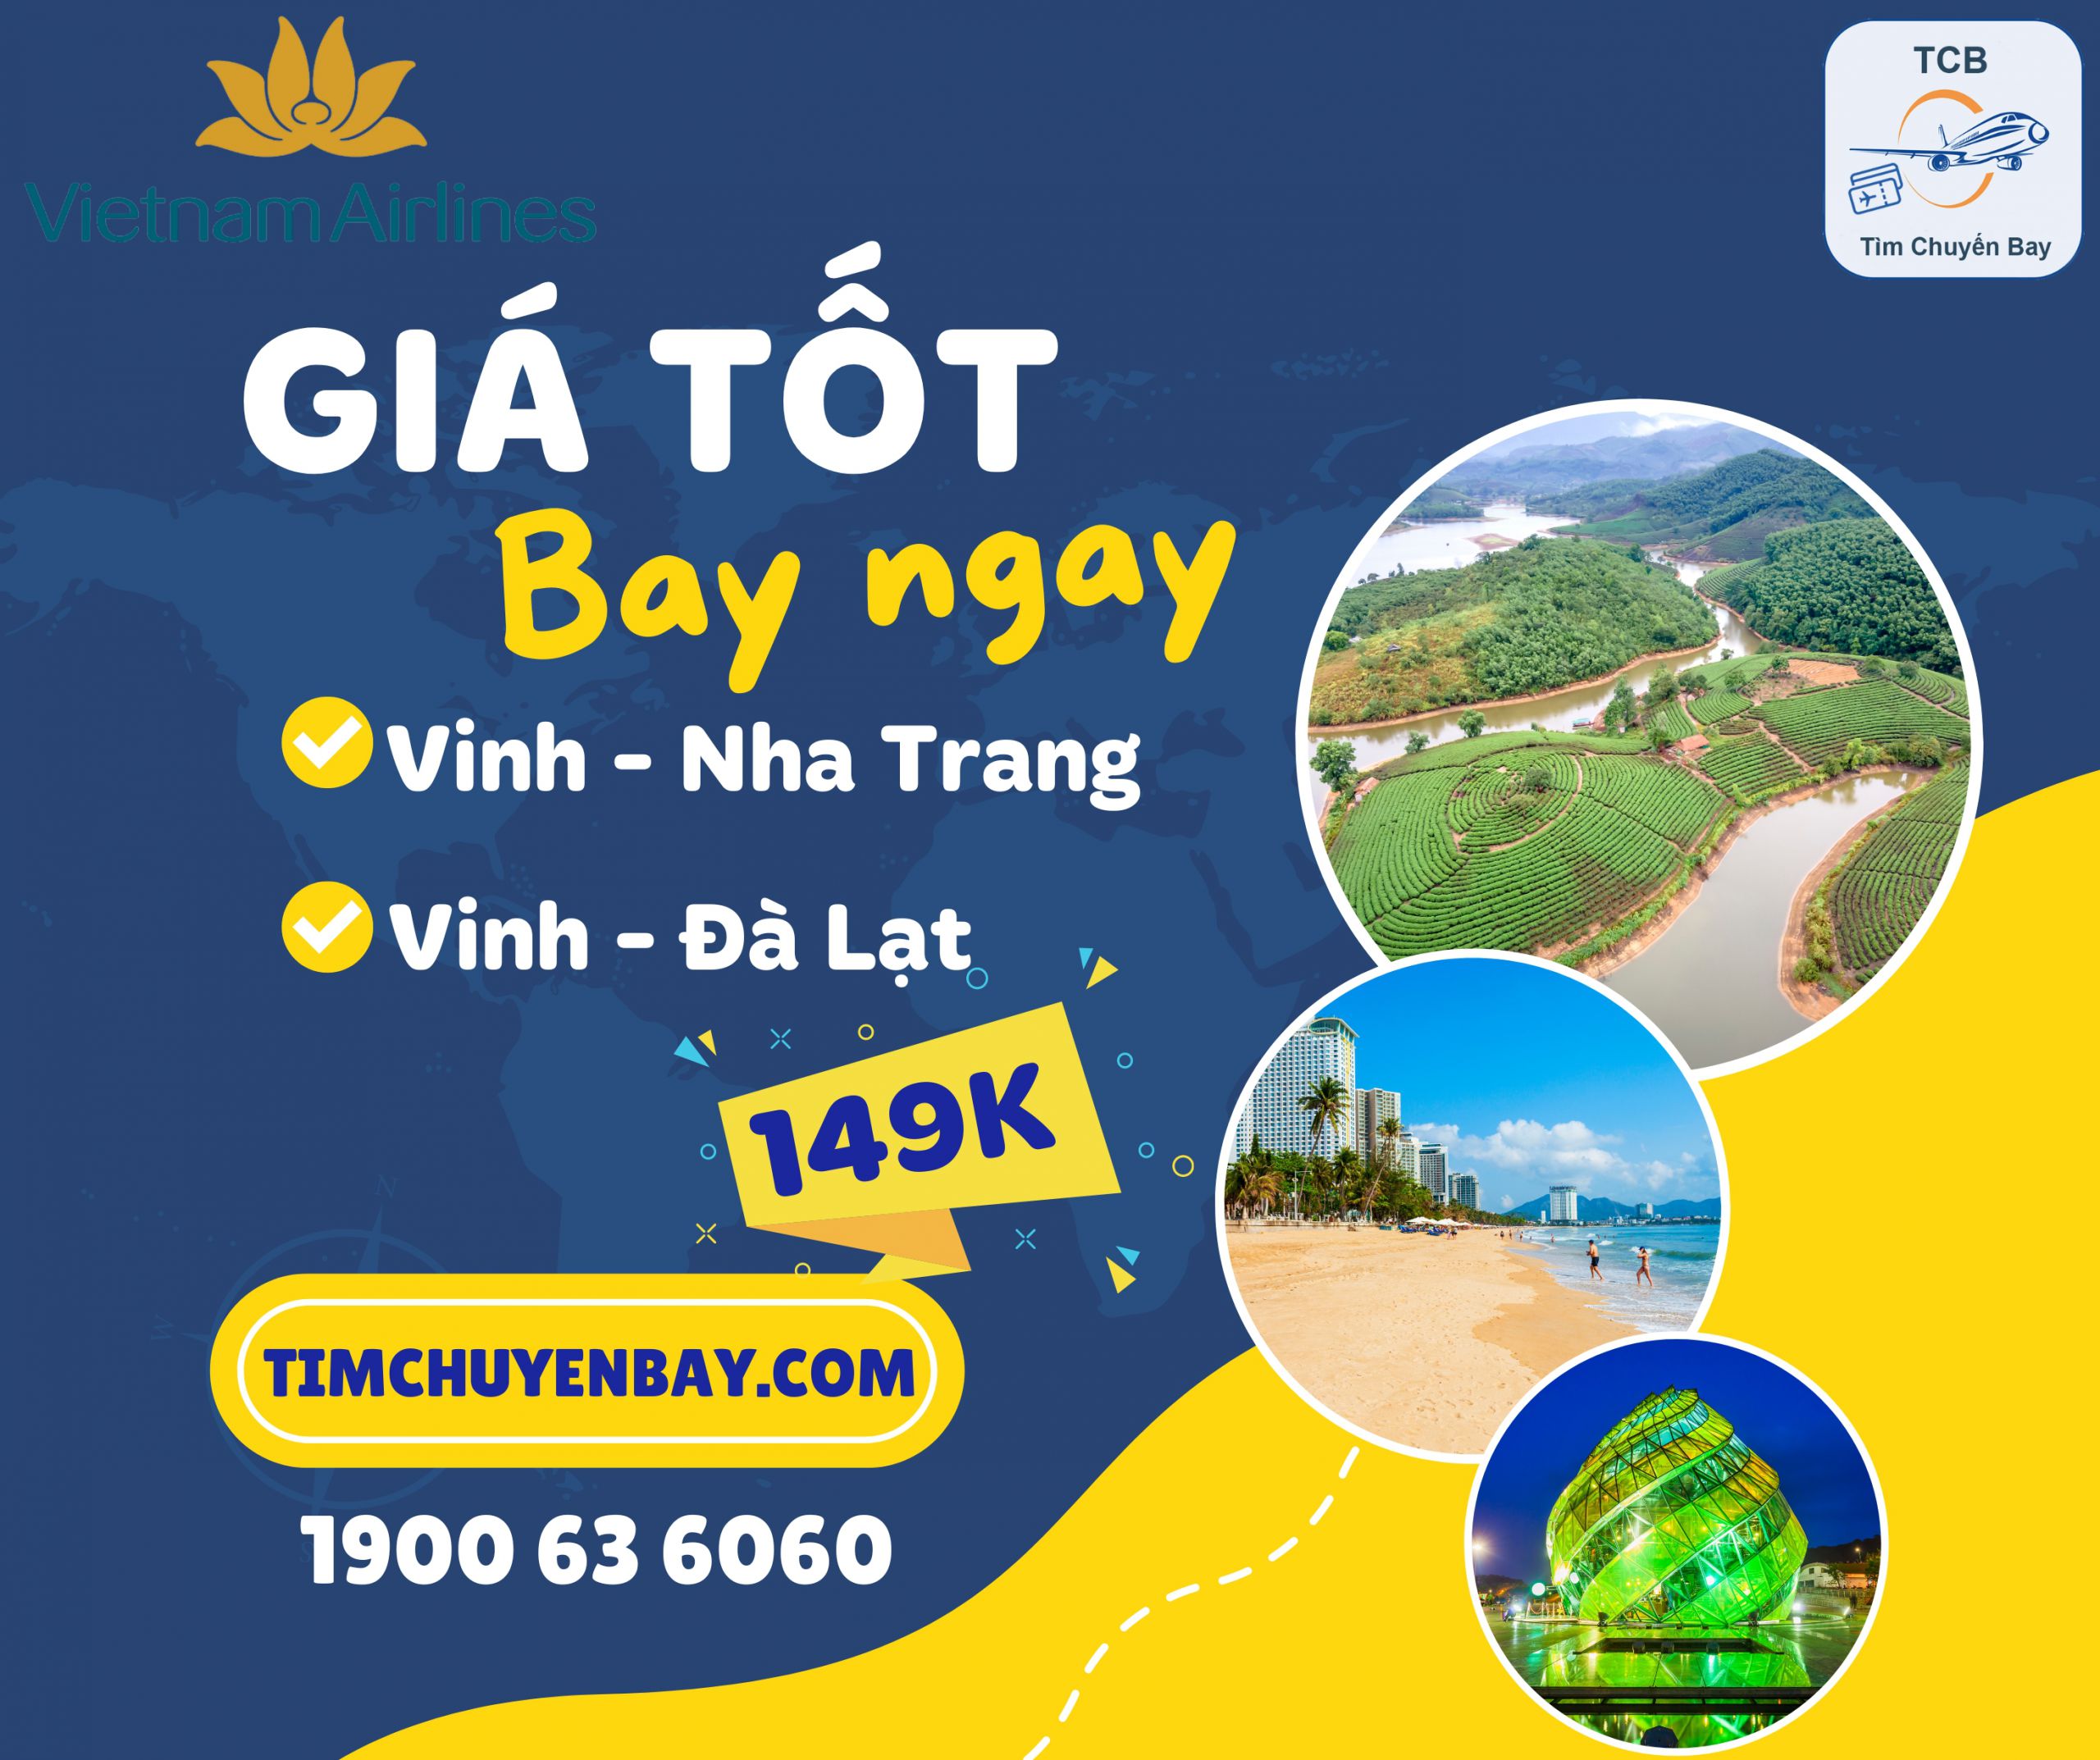 Vietnam Airlines khuyến mãi vé máy bay Vinh - Nha Trang/Đà Lạt chỉ từ 149k